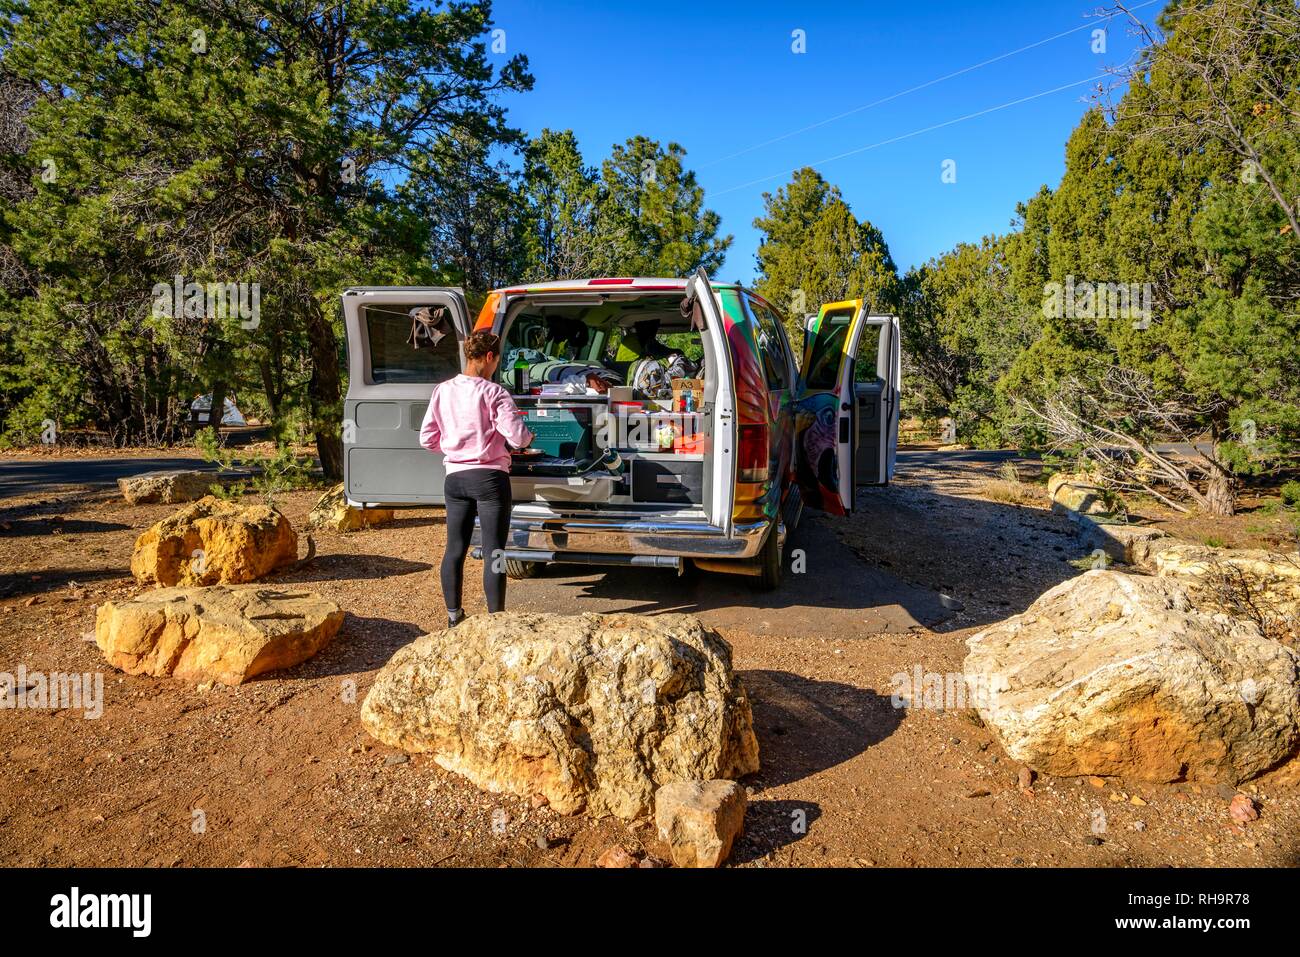 Jeune femme de la cuisson à la cuisinière à gaz de camping, camping-car, un van, camping, RV, Mather Campground, Grand Canyon National Park Banque D'Images